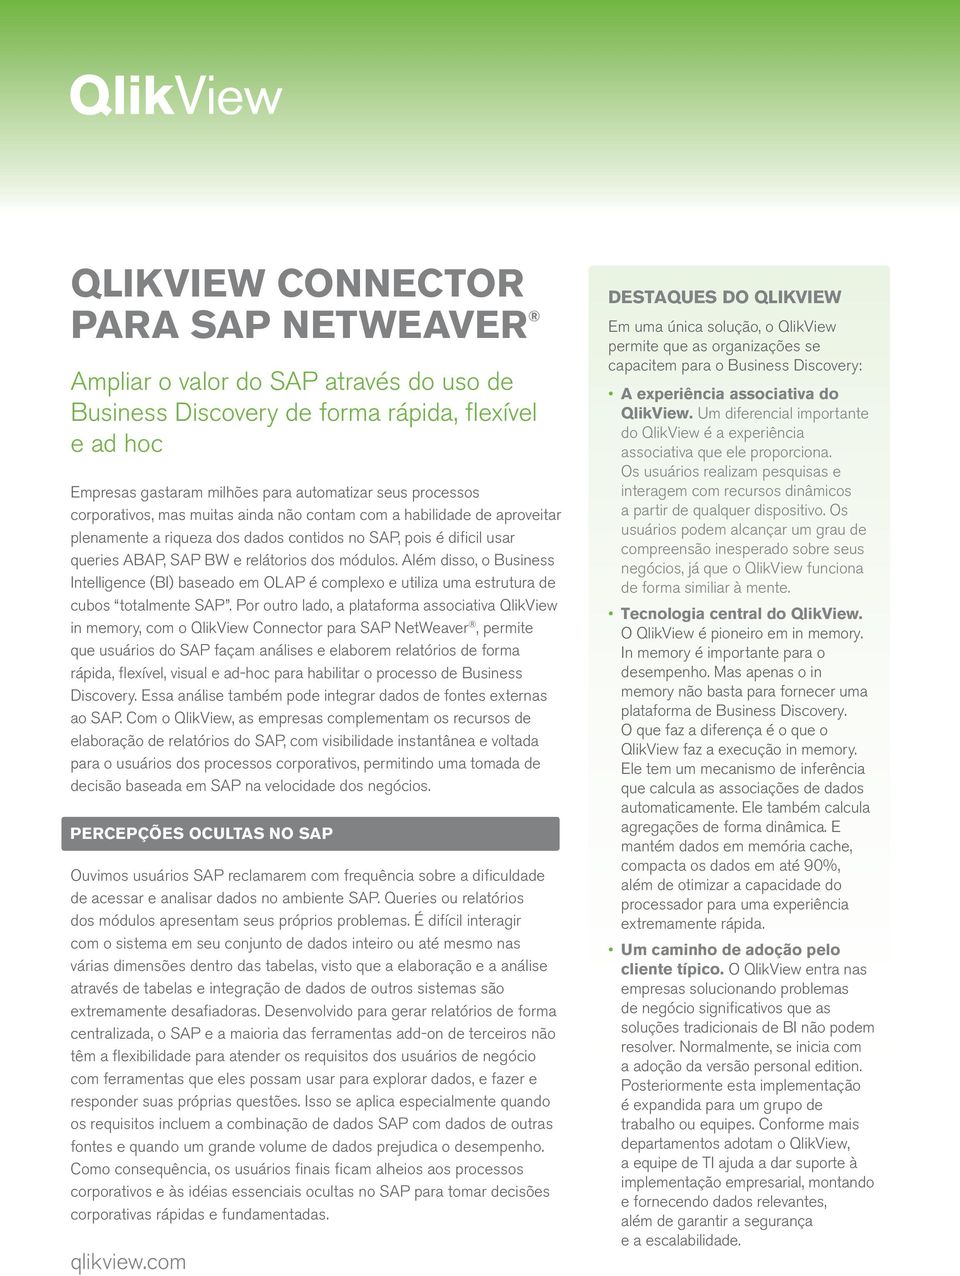 Além disso, o Business Intelligence (BI) baseado em OLAP é complexo e utiliza uma estrutura de cubos totalmente SAP.